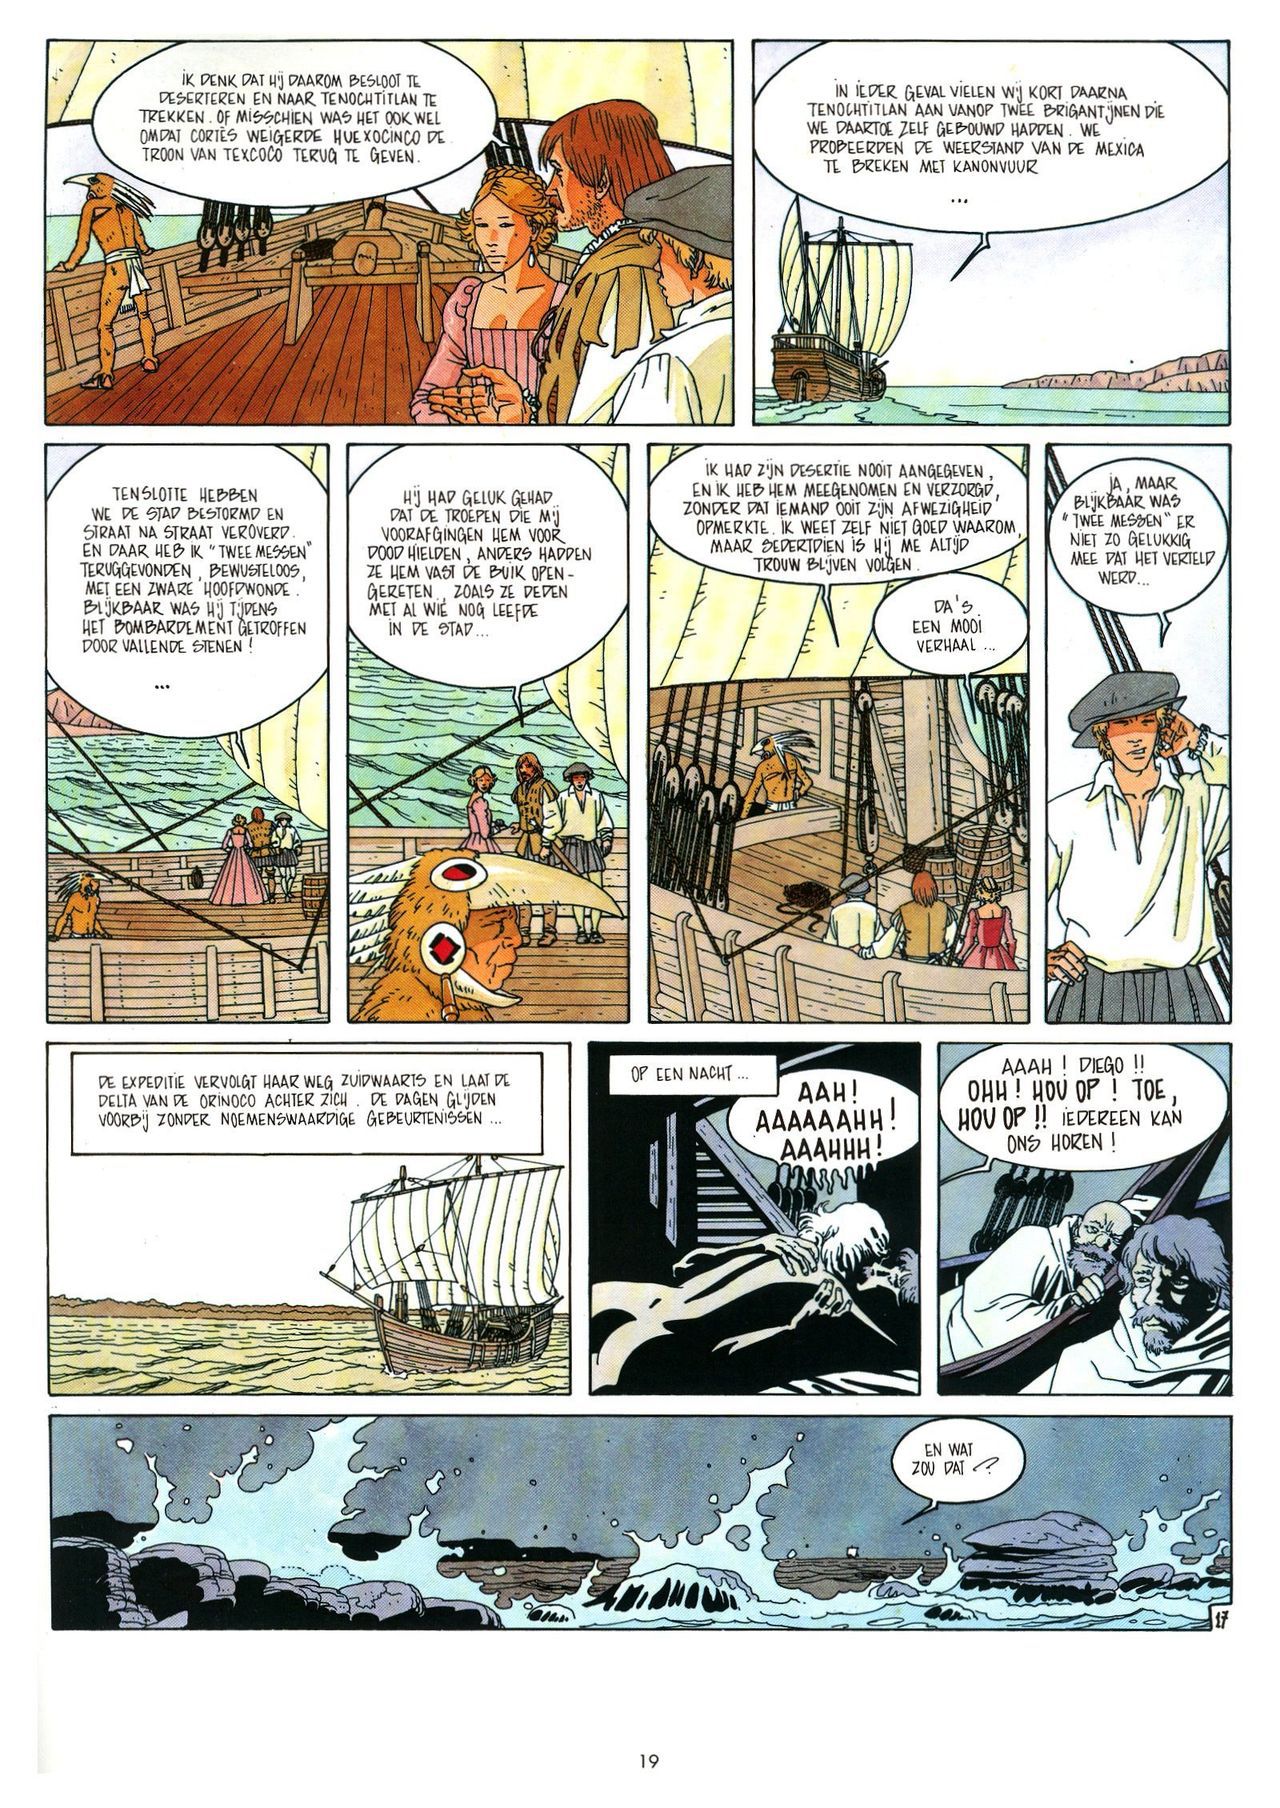 Eldorado - 03 - De Jaguarmensen (Dutch) Franstalige strips die op deze site staan, hier is de Nederlandse uitgave! 19